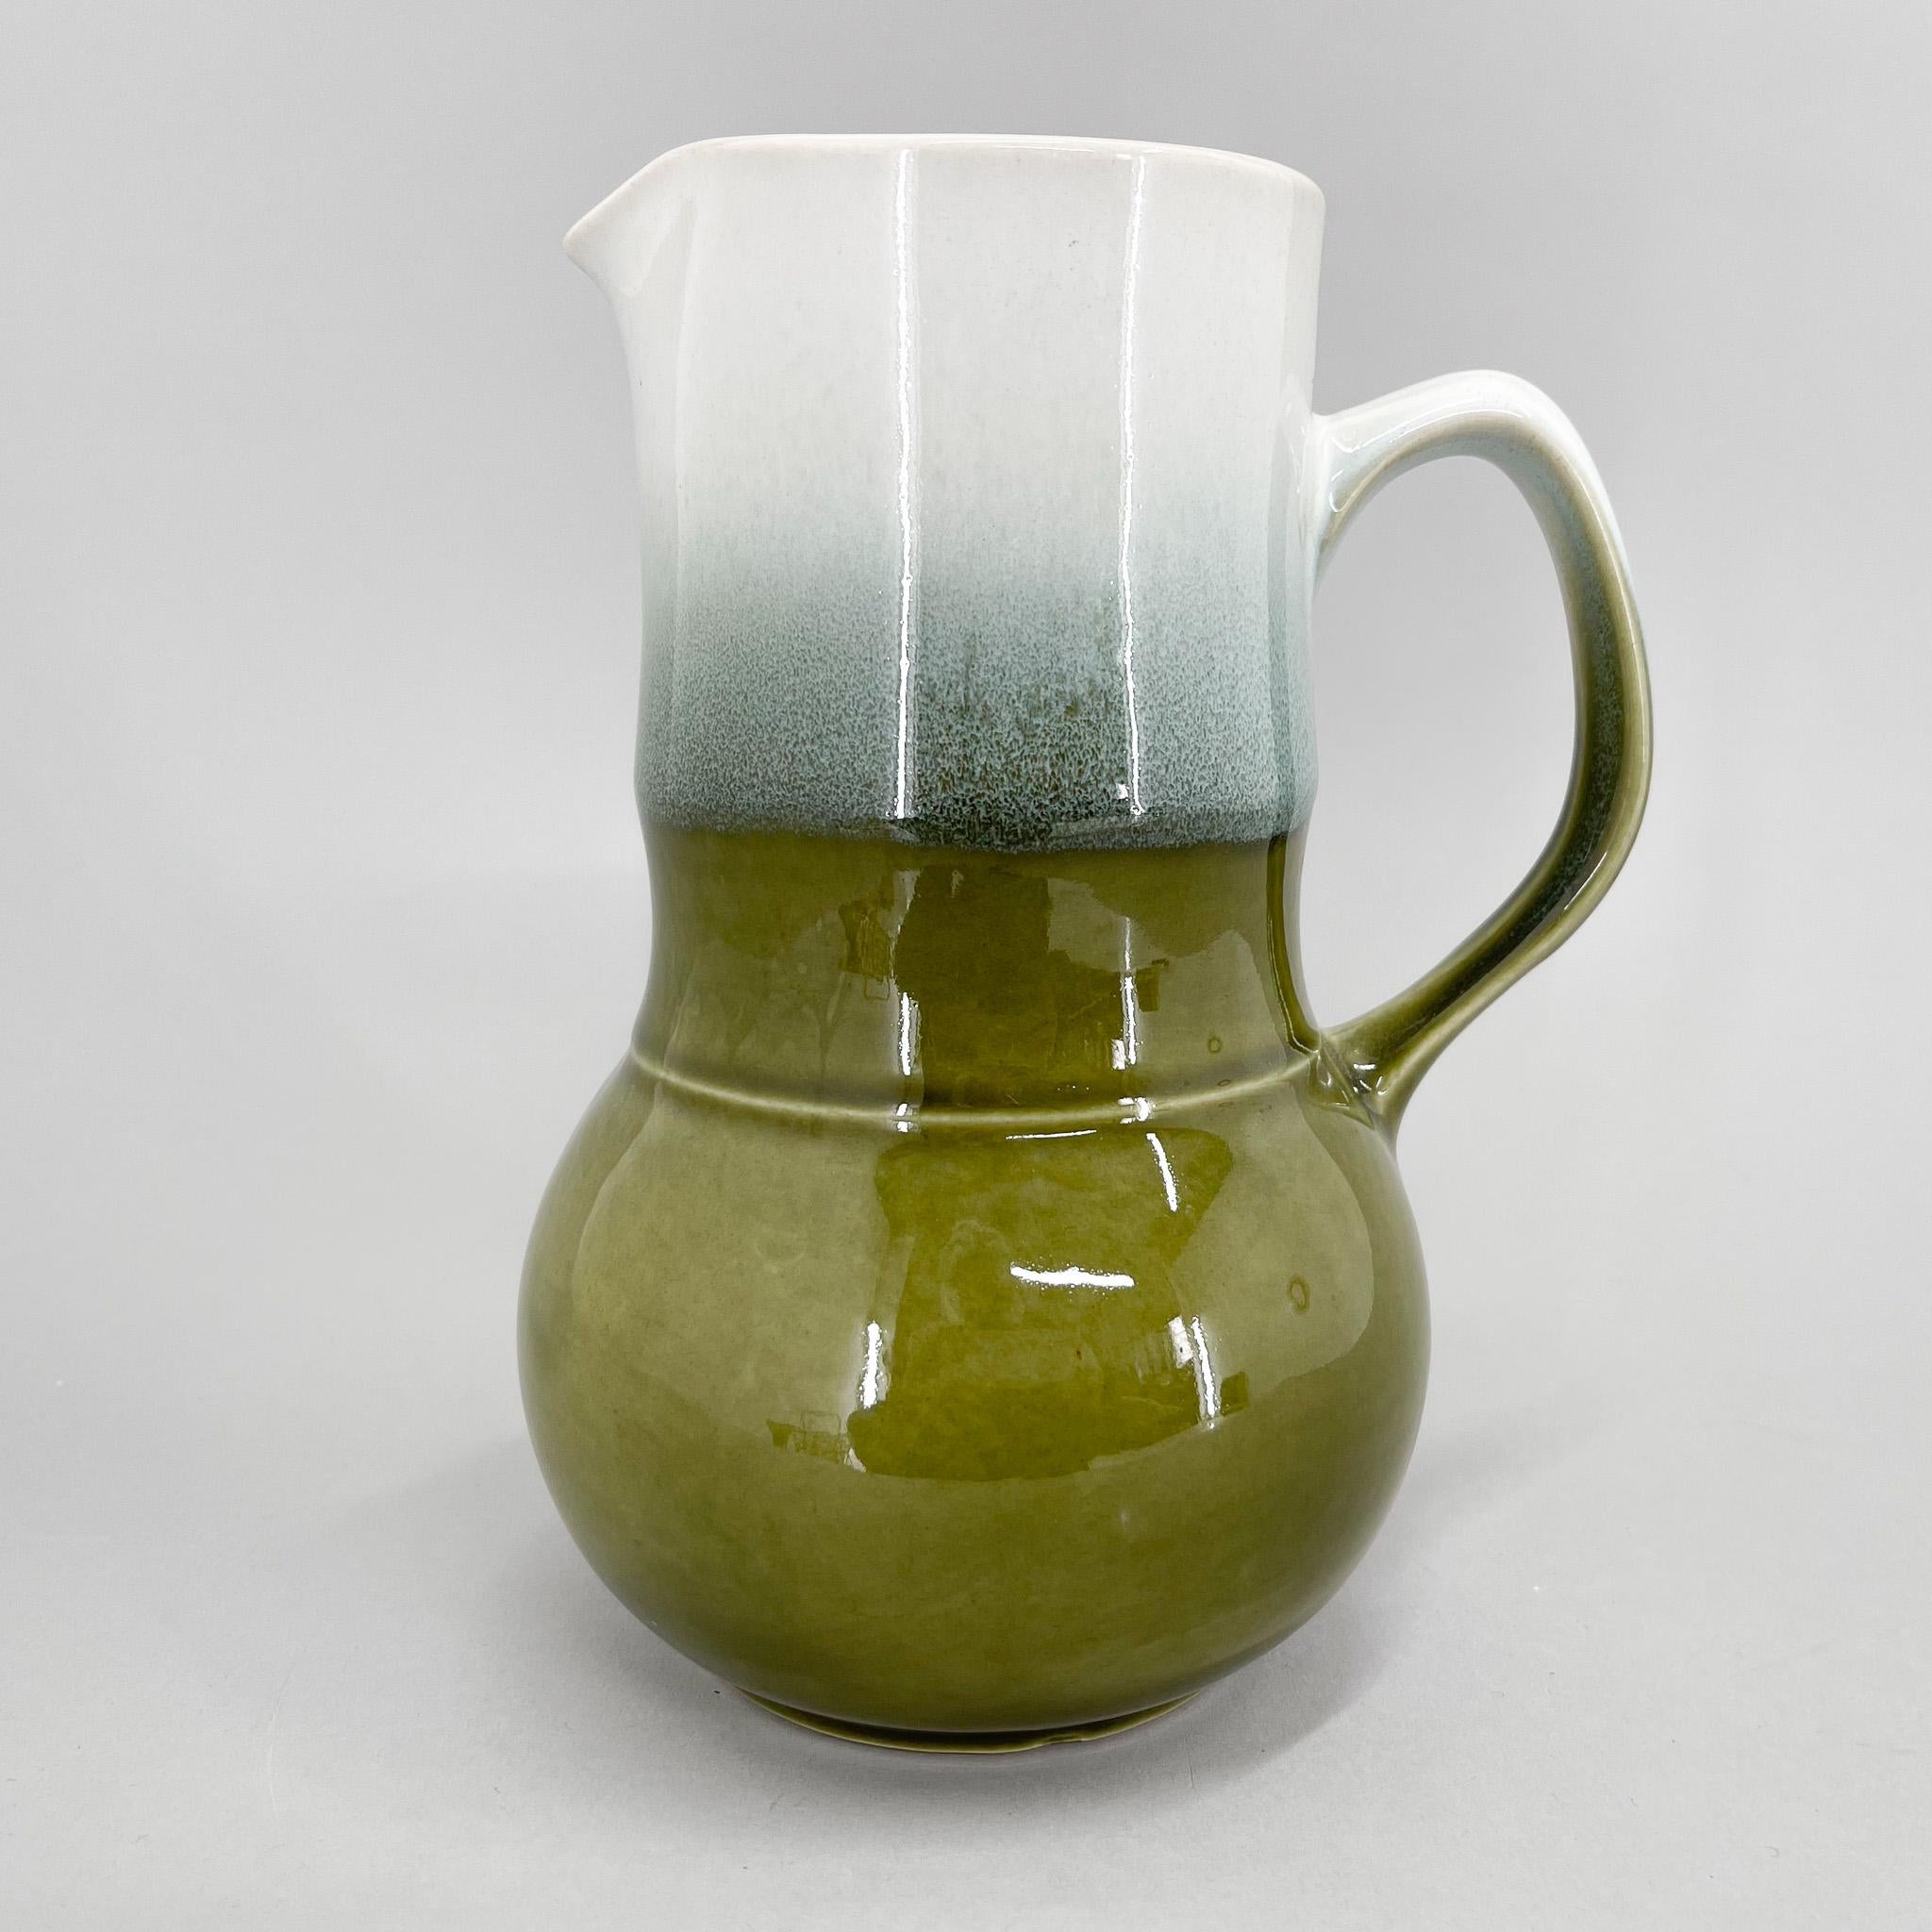 Pichet vintage en céramique émaillée de couleur verte et blanche, produit par Whiting Urbach dans l'ancienne Tchécoslovaquie dans les années 1970.